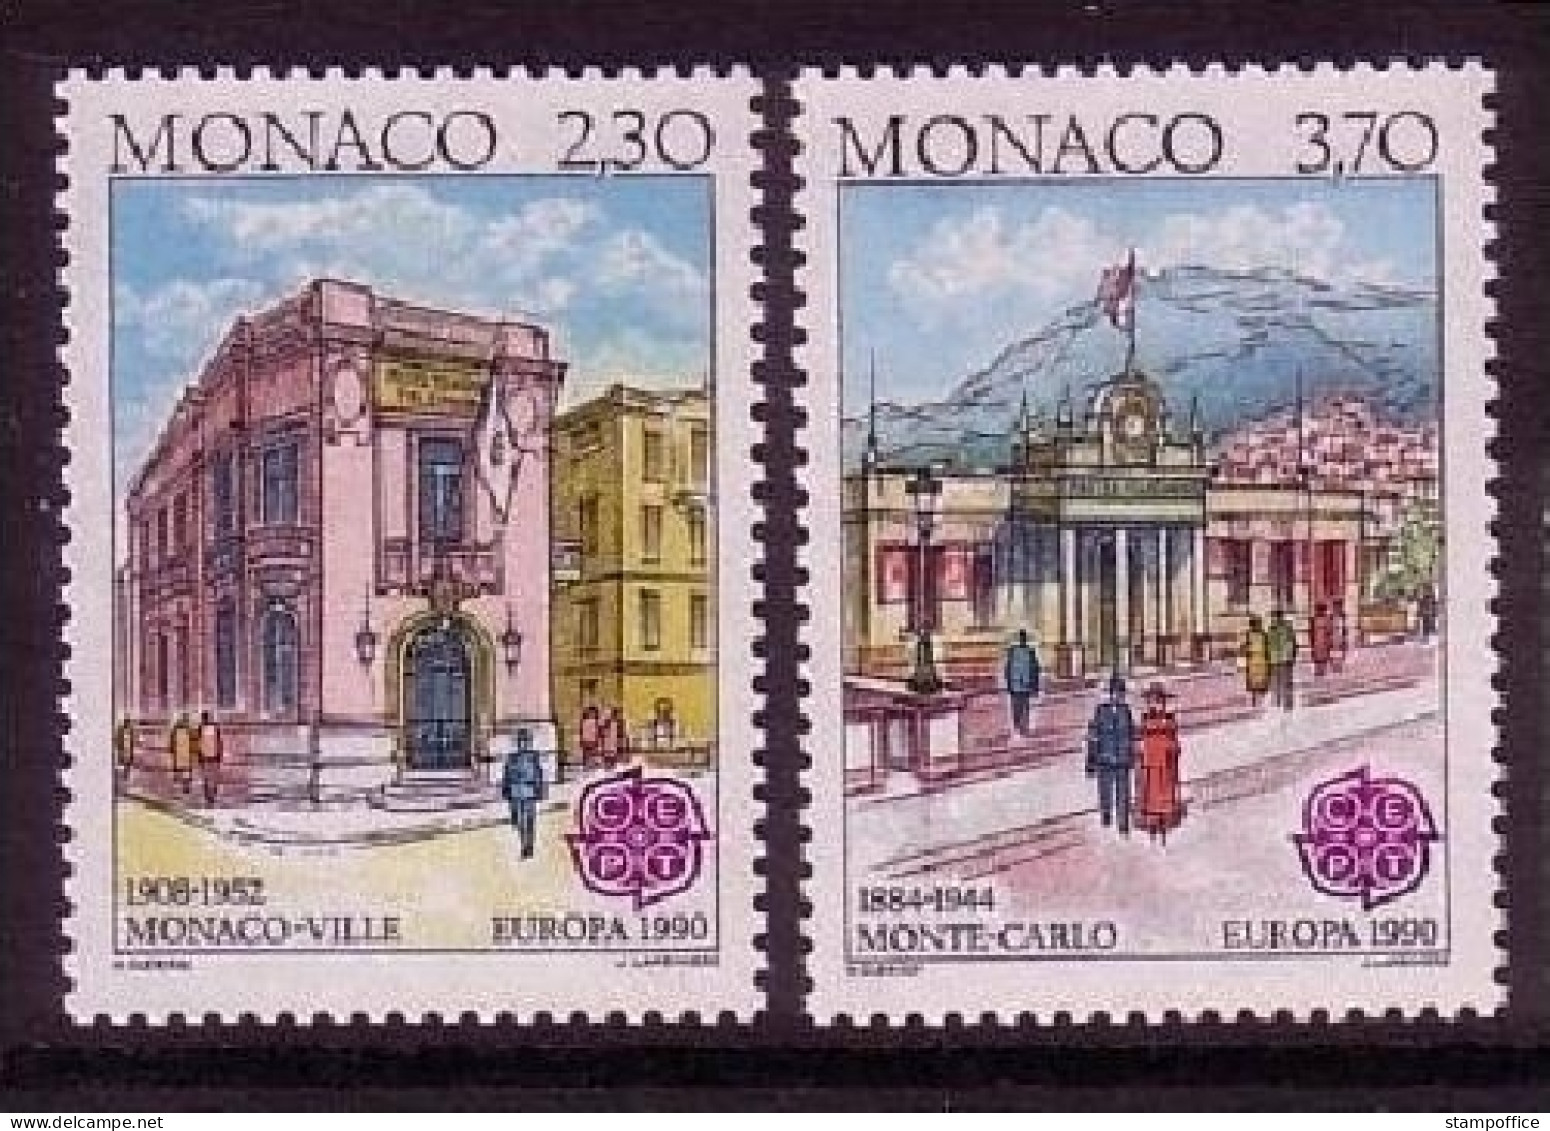 MONACO MI-NR. 1961-1962 POSTFRISCH(MINT) EUROPA 1990 POSTALISCHE EINRICHTUNGEN - 1990